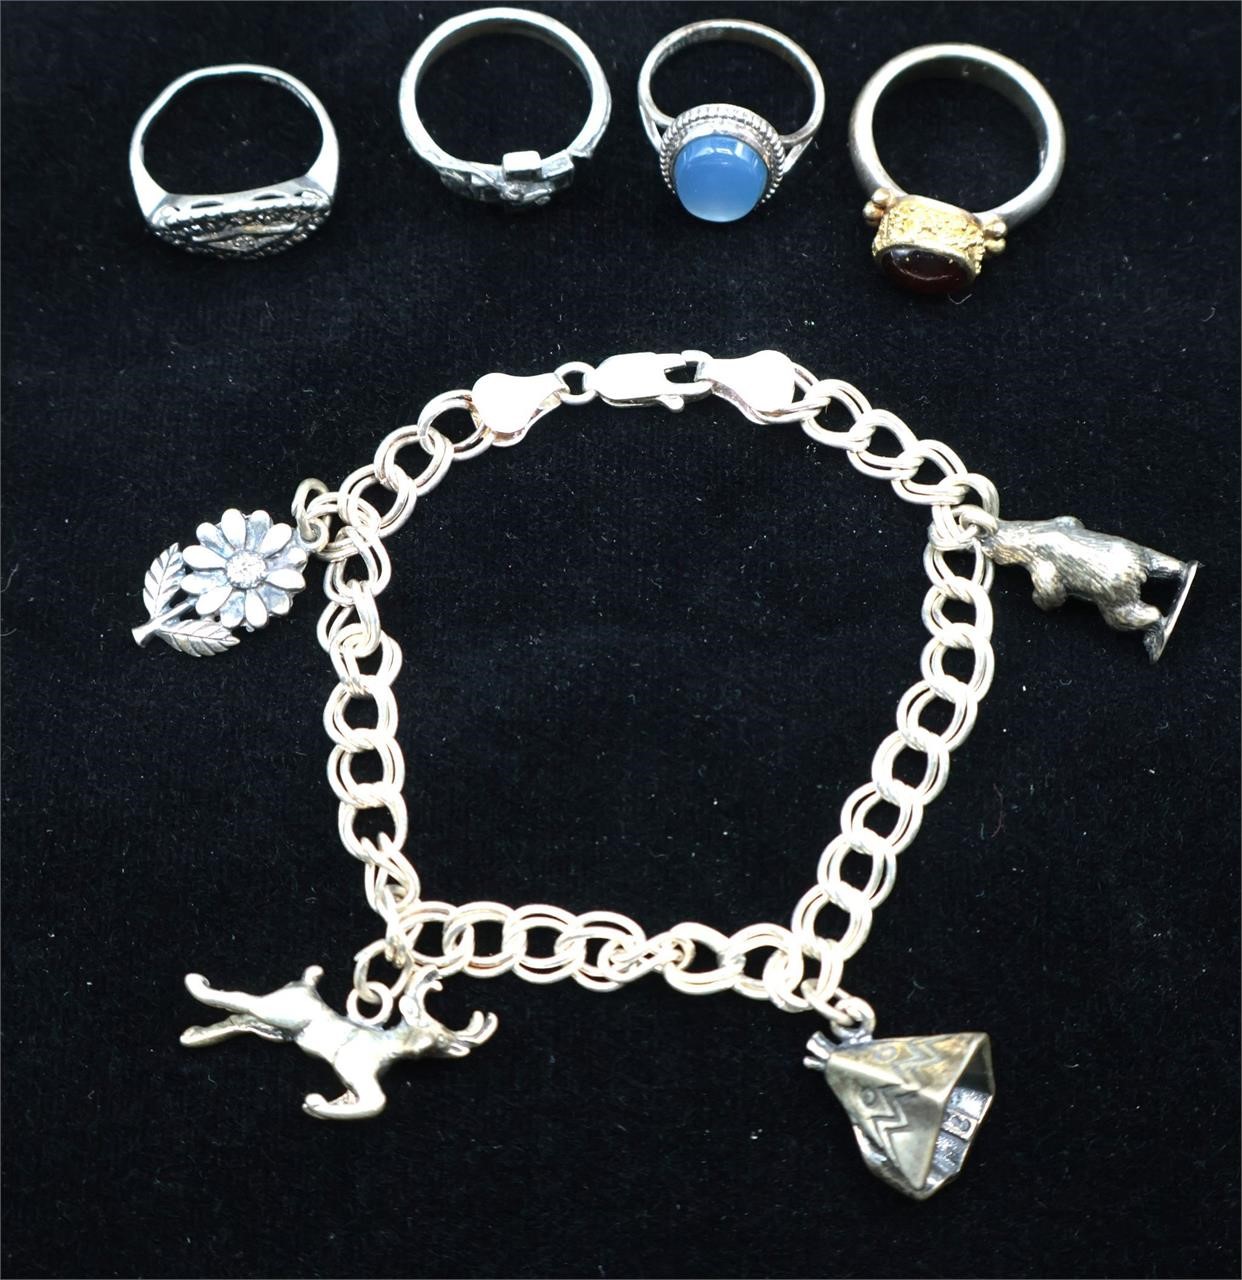 4 Sterling Rings & Charm Bracelet - 28g